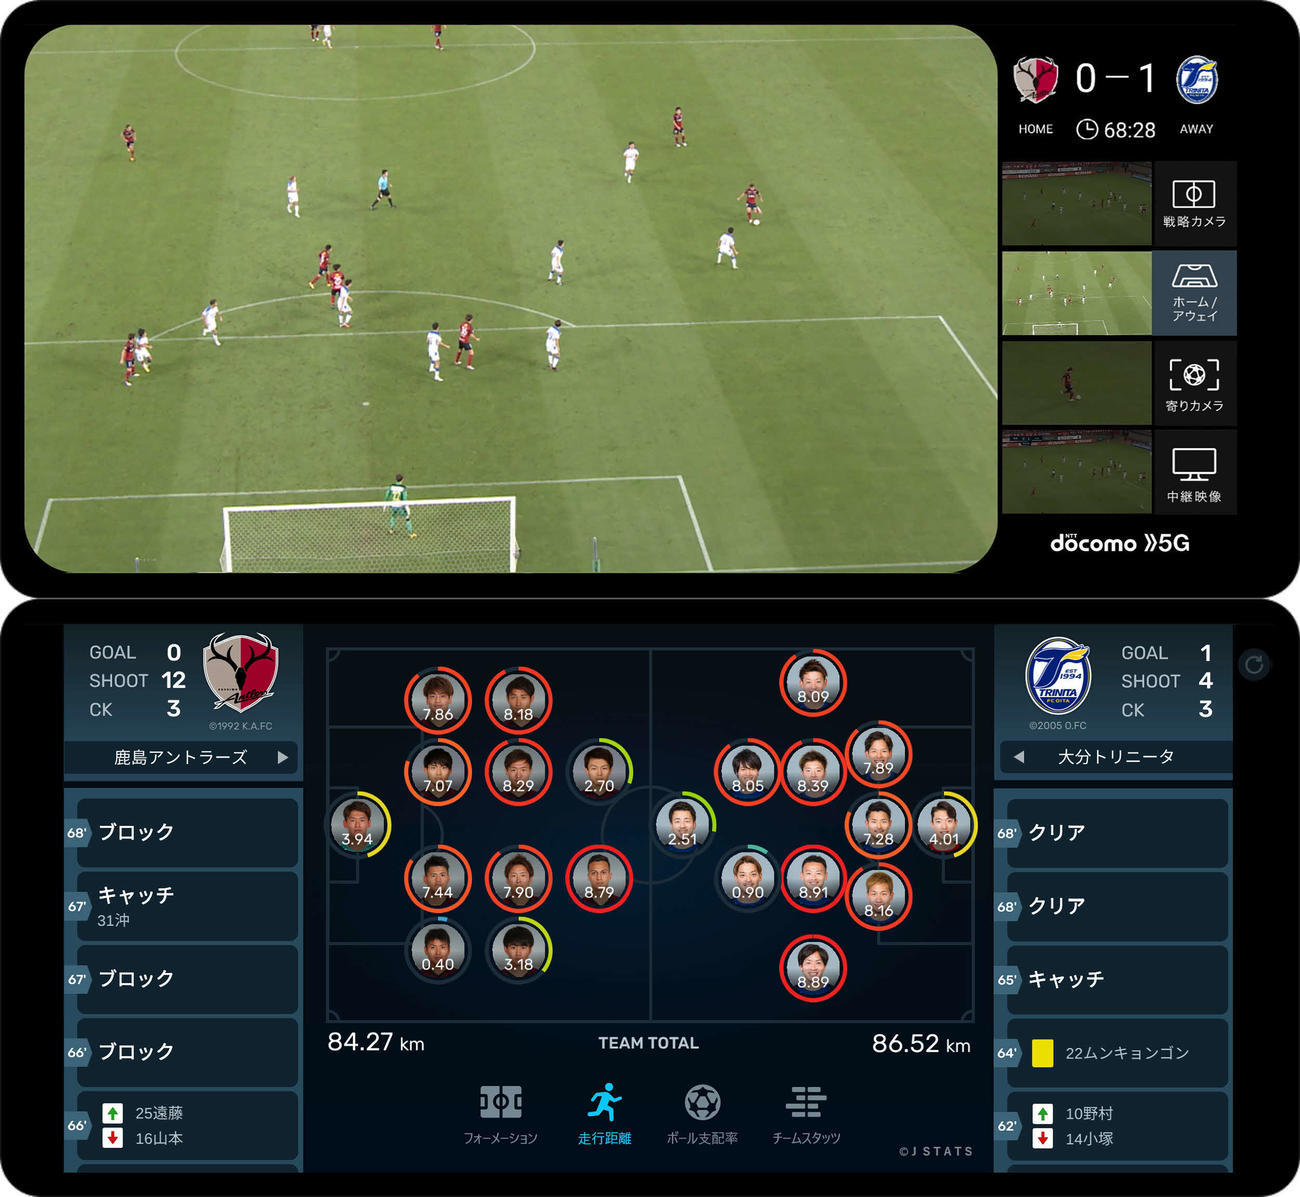 専用端末の上画面では4アングルの映像が、下画面では文字情報が提供される。選手の顔写真下にはリアルタイムの走行距離が表示されている